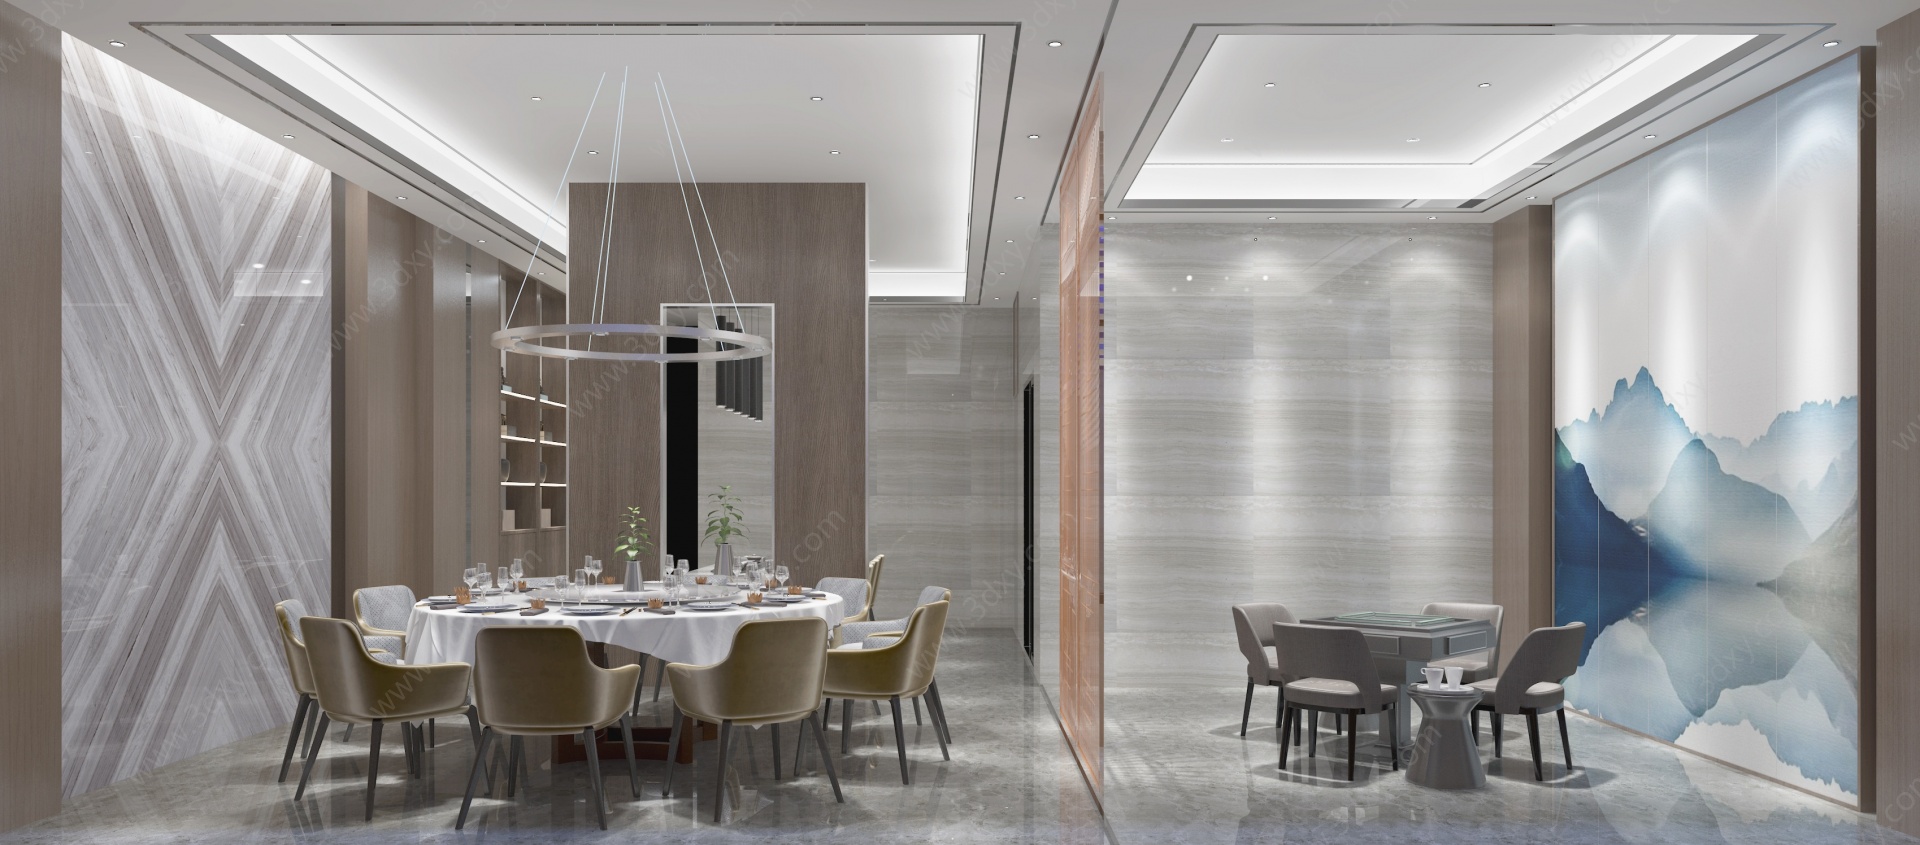 现代餐厅会客室3D模型